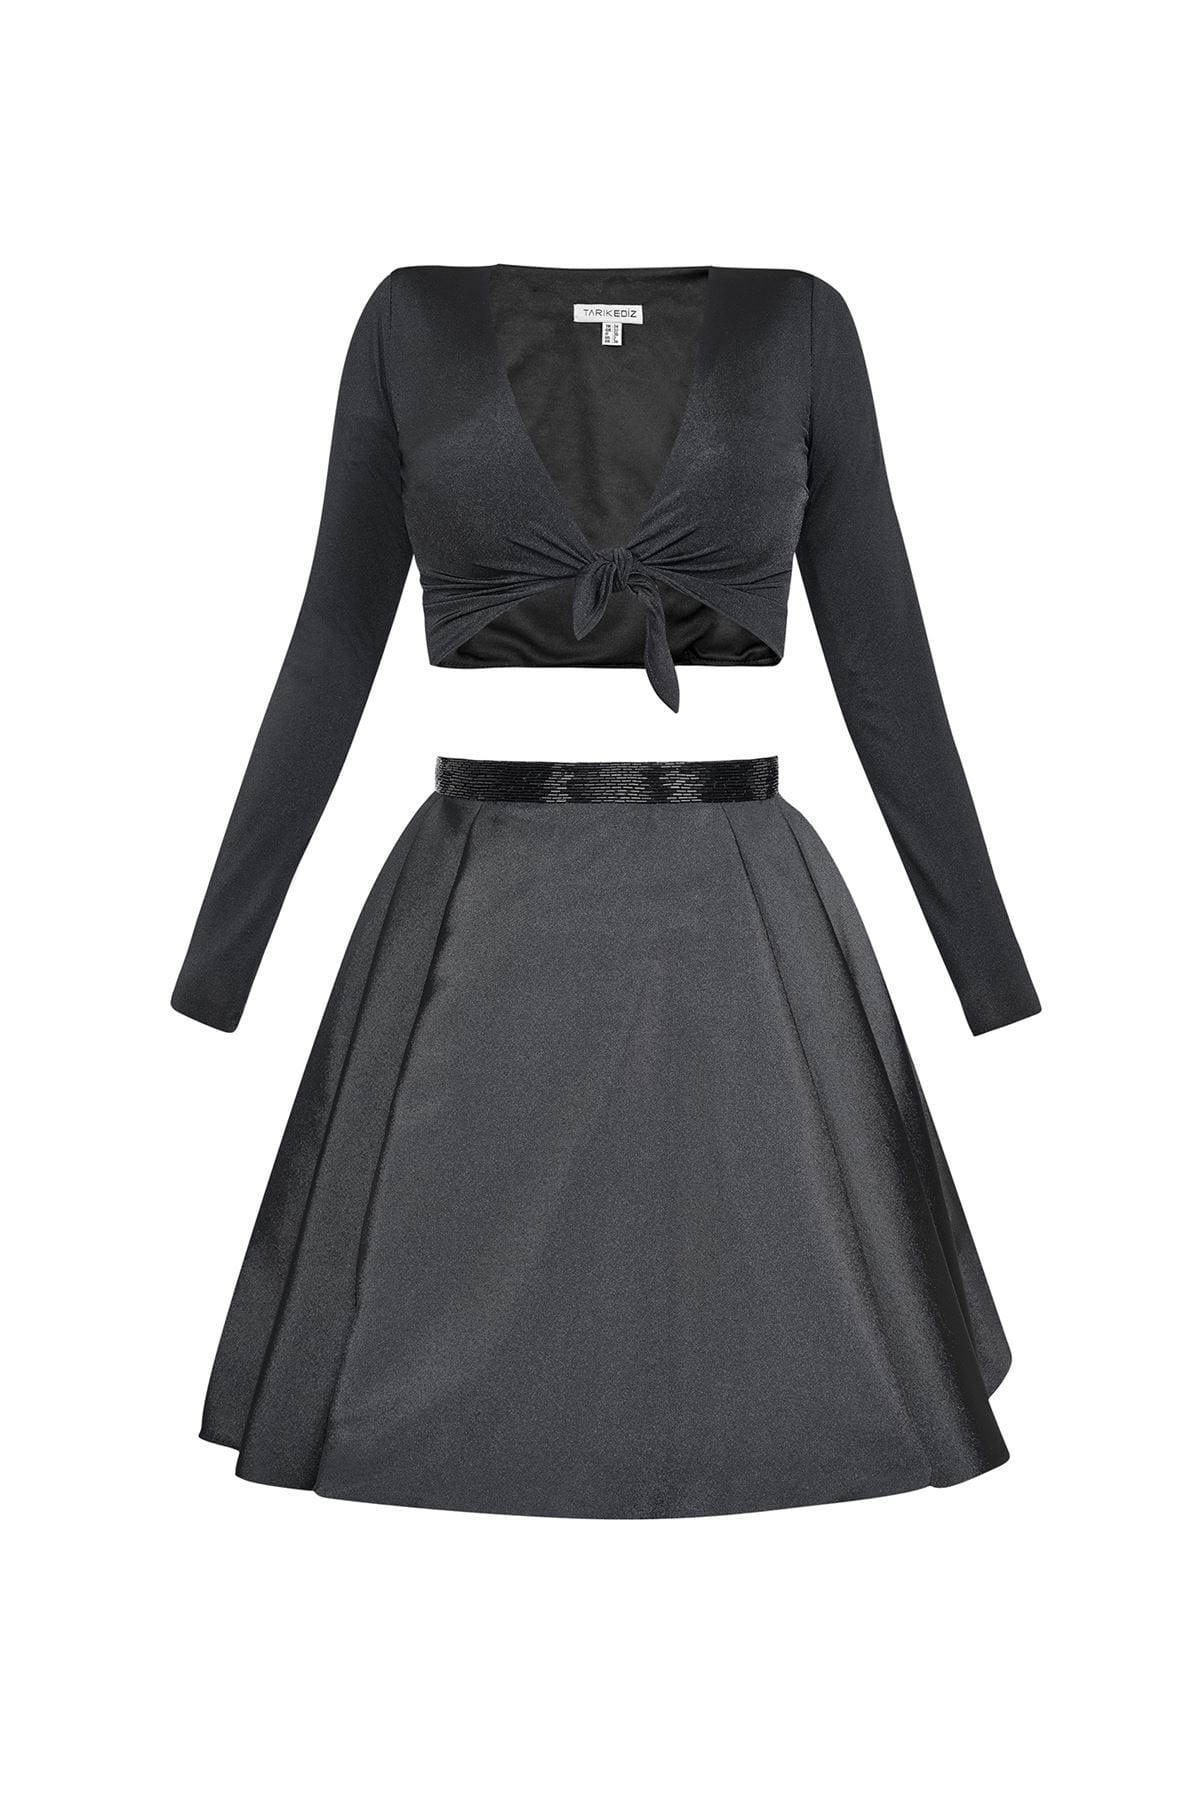 Tarik Ediz - Two-Piece V-Neck A-line Dress 50005 – Couture Candy